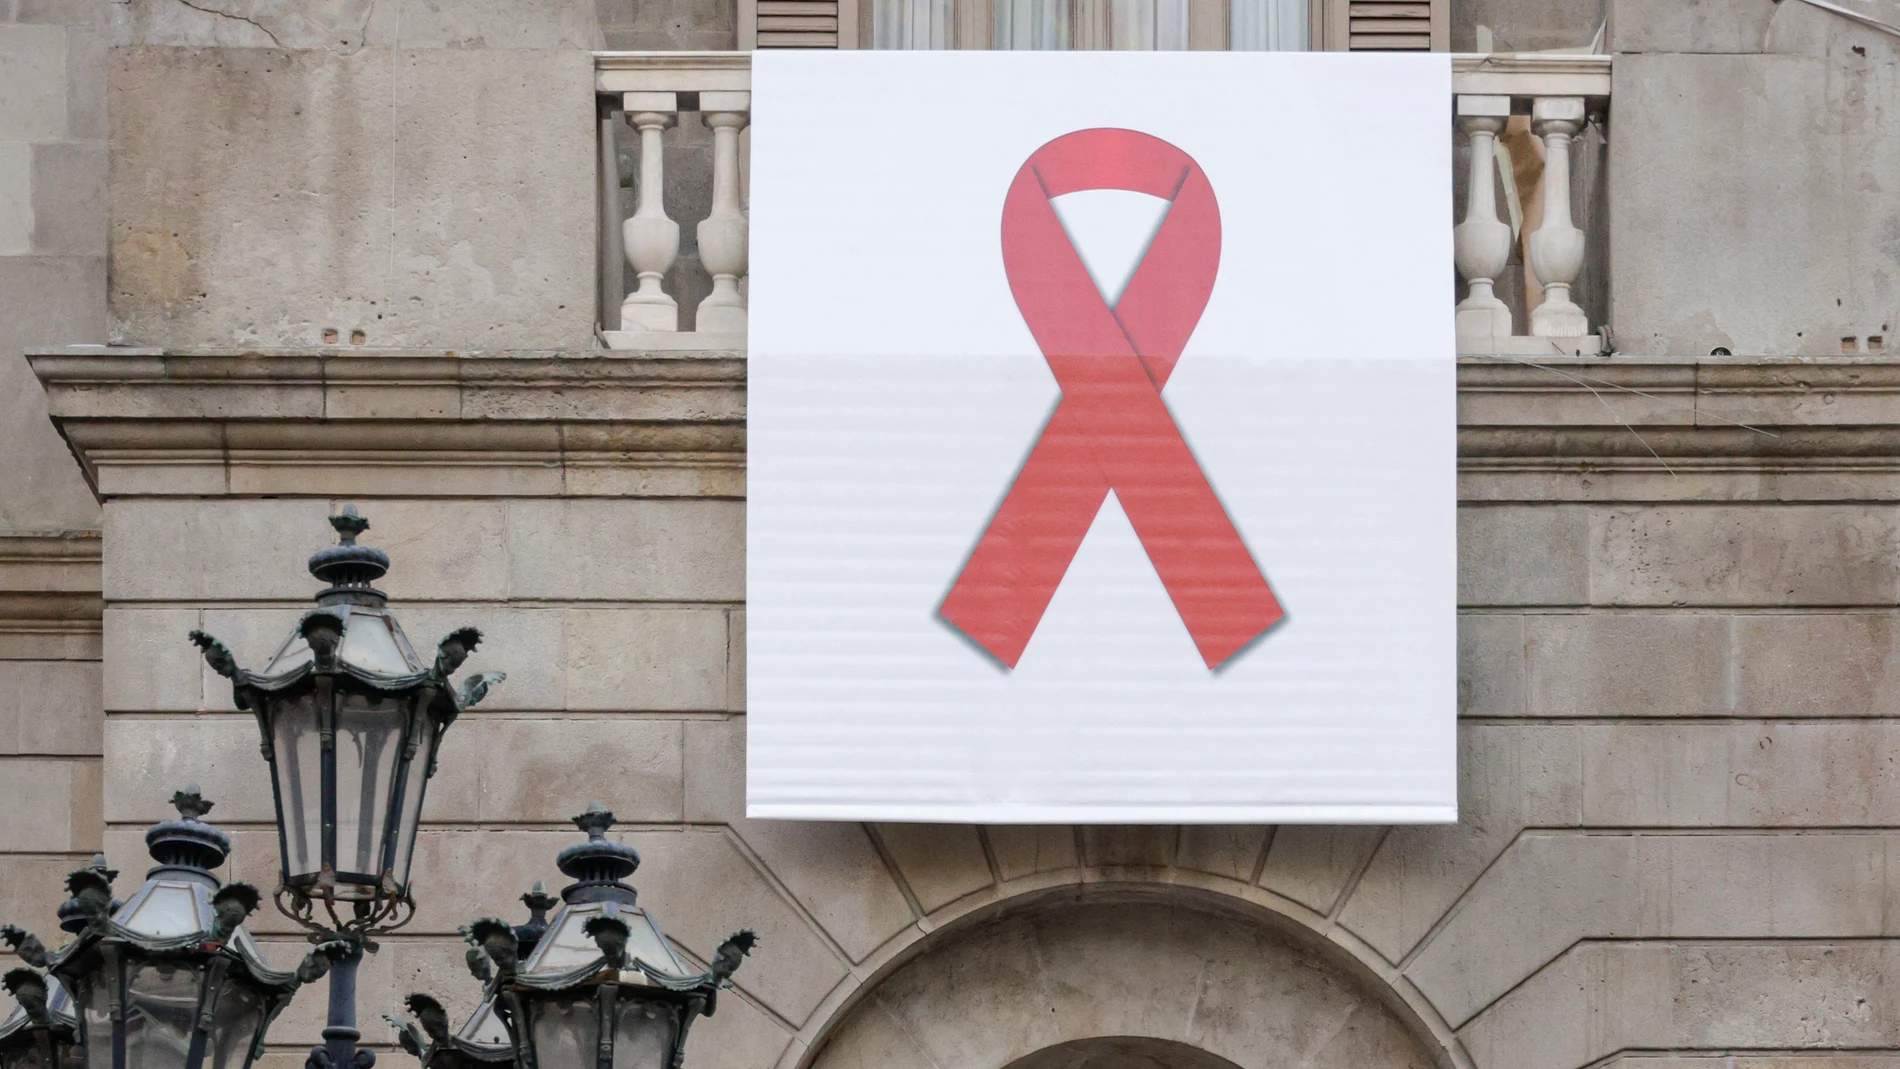 El ayuntamiento de Barcelona colgó en su balcón un lazo rojo gigante para sensibilizar, visibilizar y mostrar su apoyo a las personas que viven con el VIH durante la conmemoración hoy del Día Mundial de la lucha contra el sida